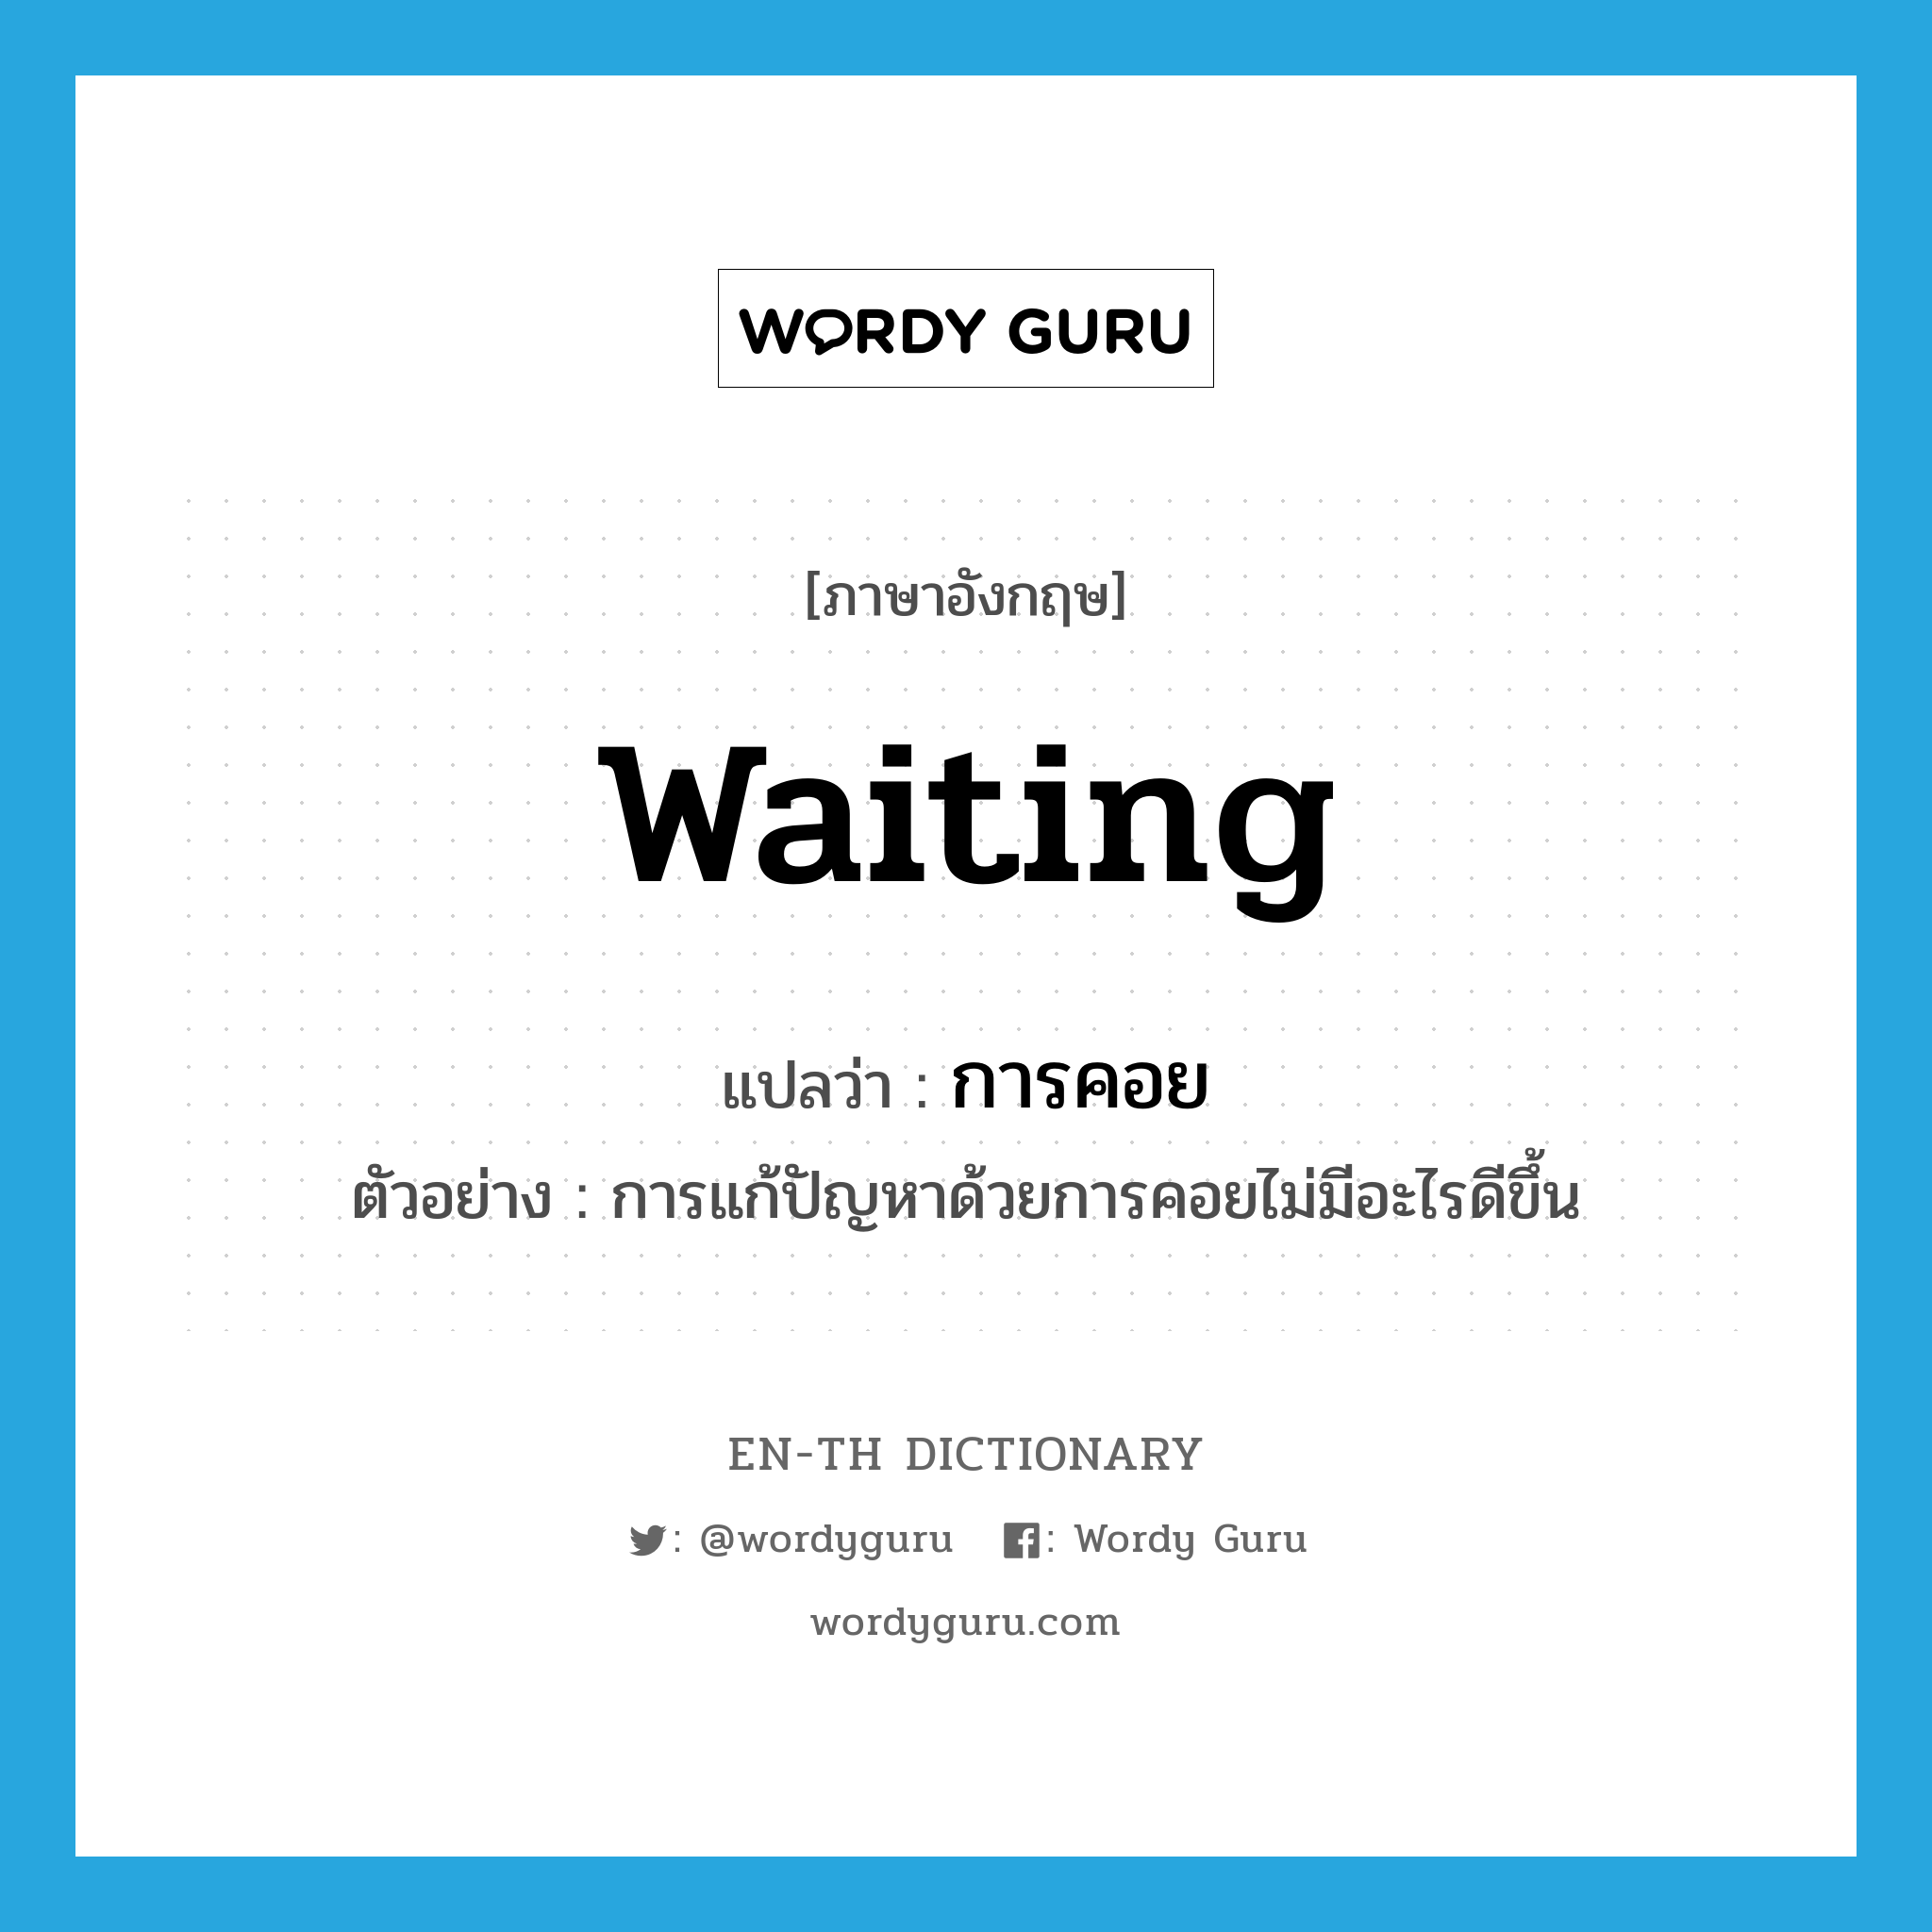 การคอย ภาษาอังกฤษ?, คำศัพท์ภาษาอังกฤษ การคอย แปลว่า waiting ประเภท N ตัวอย่าง การแก้ปัญหาด้วยการคอยไม่มีอะไรดีขึ้น หมวด N